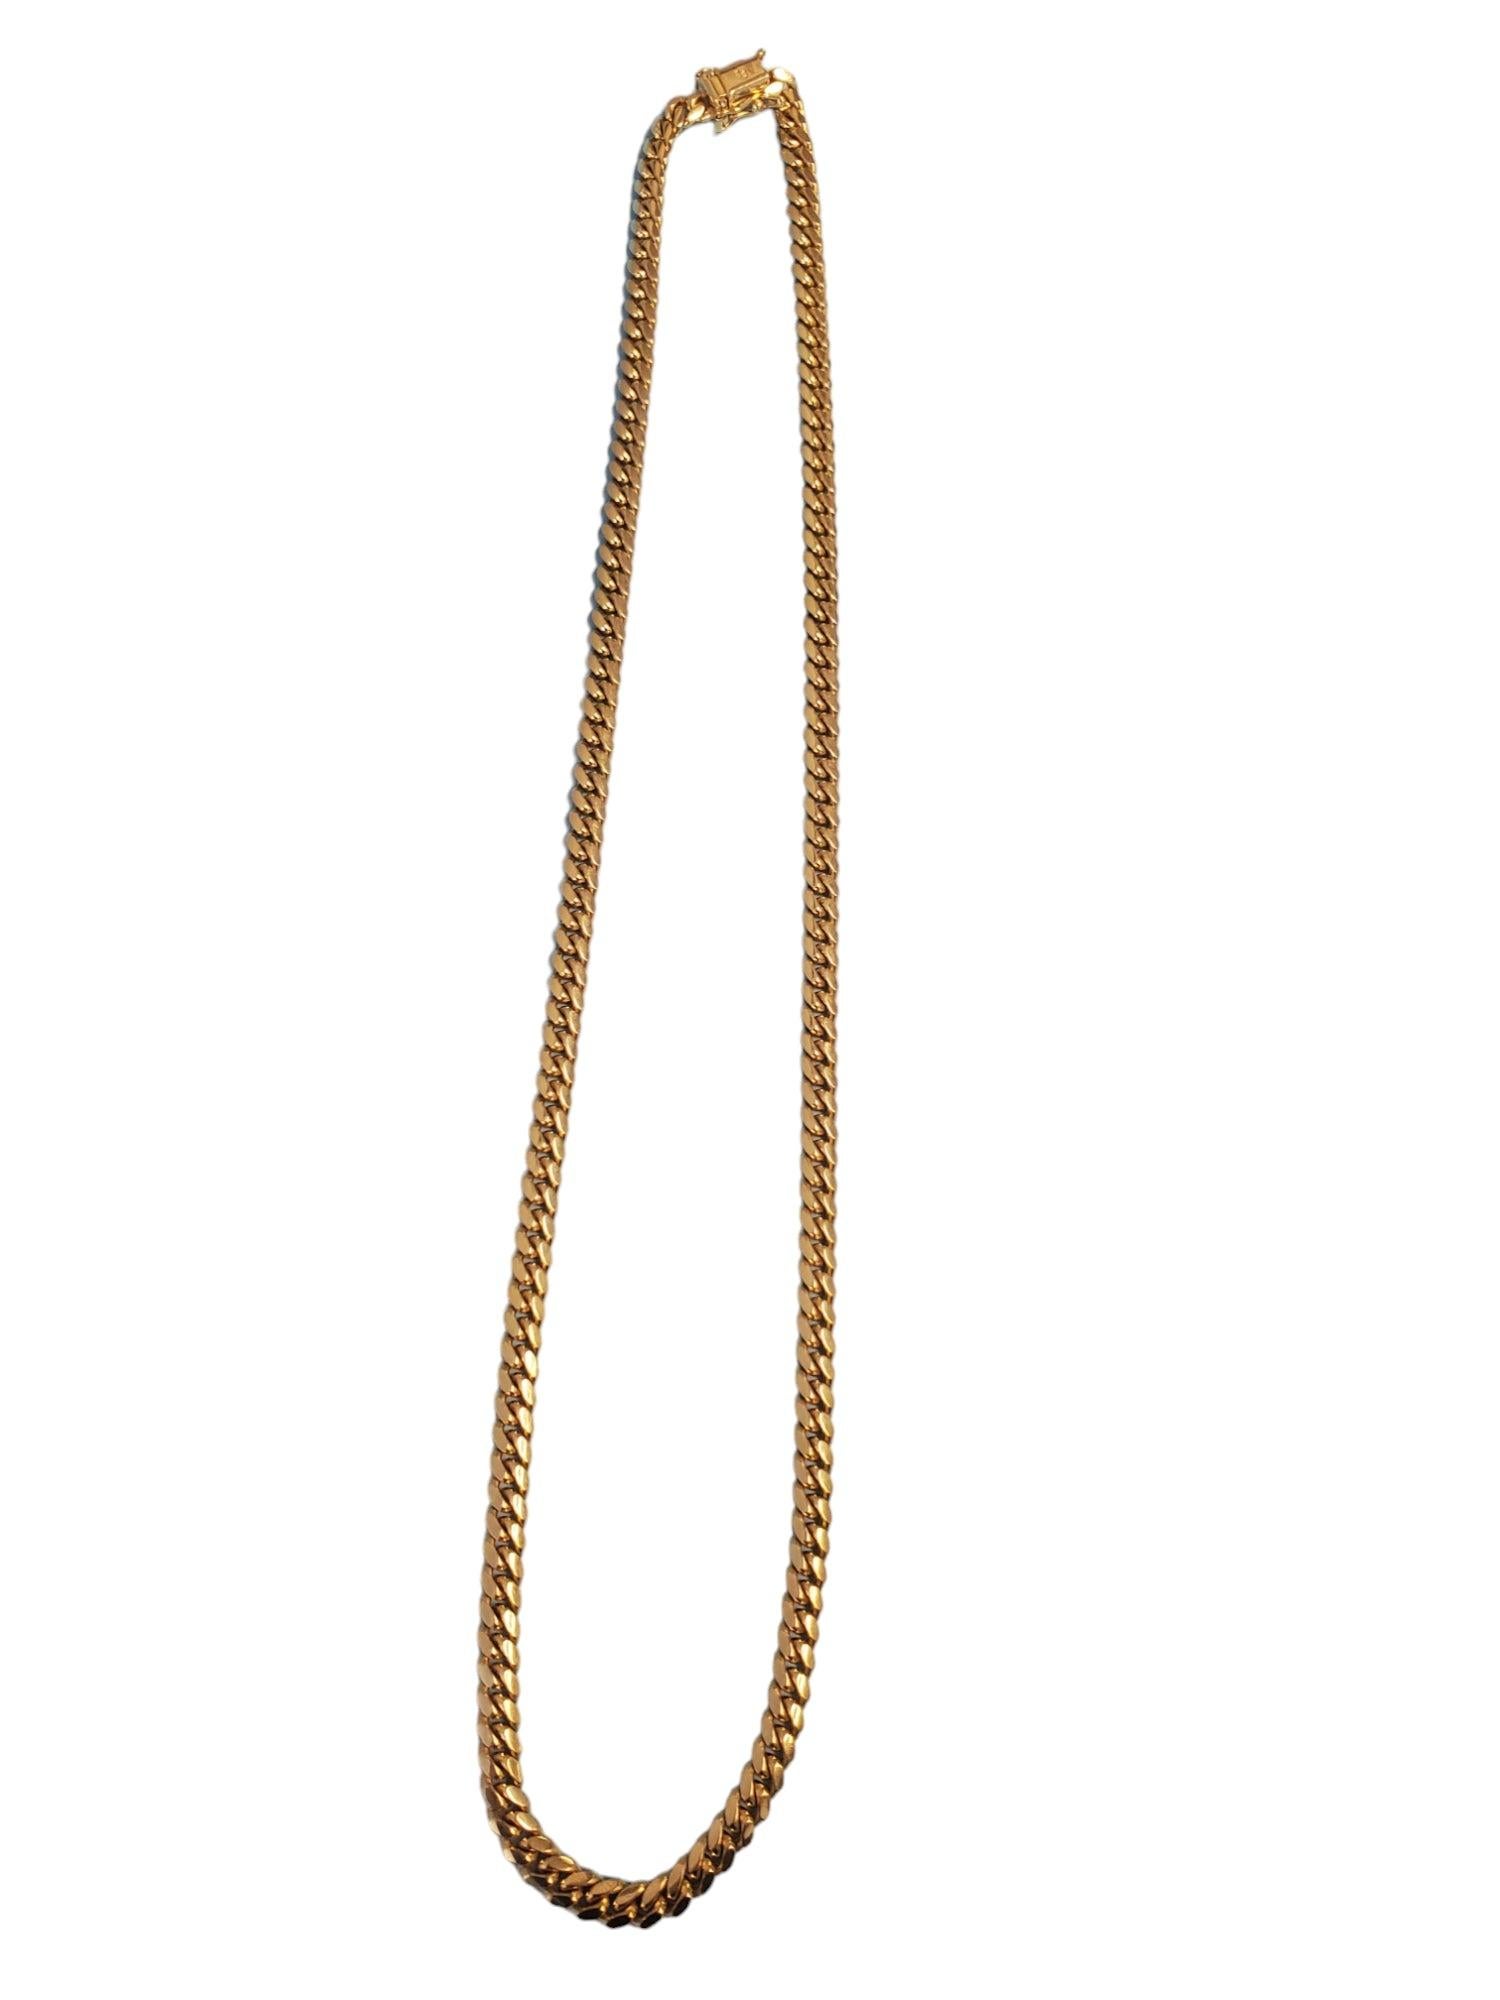 Nachlass Kubanische Kette Halskette 10k Gelbgold 20